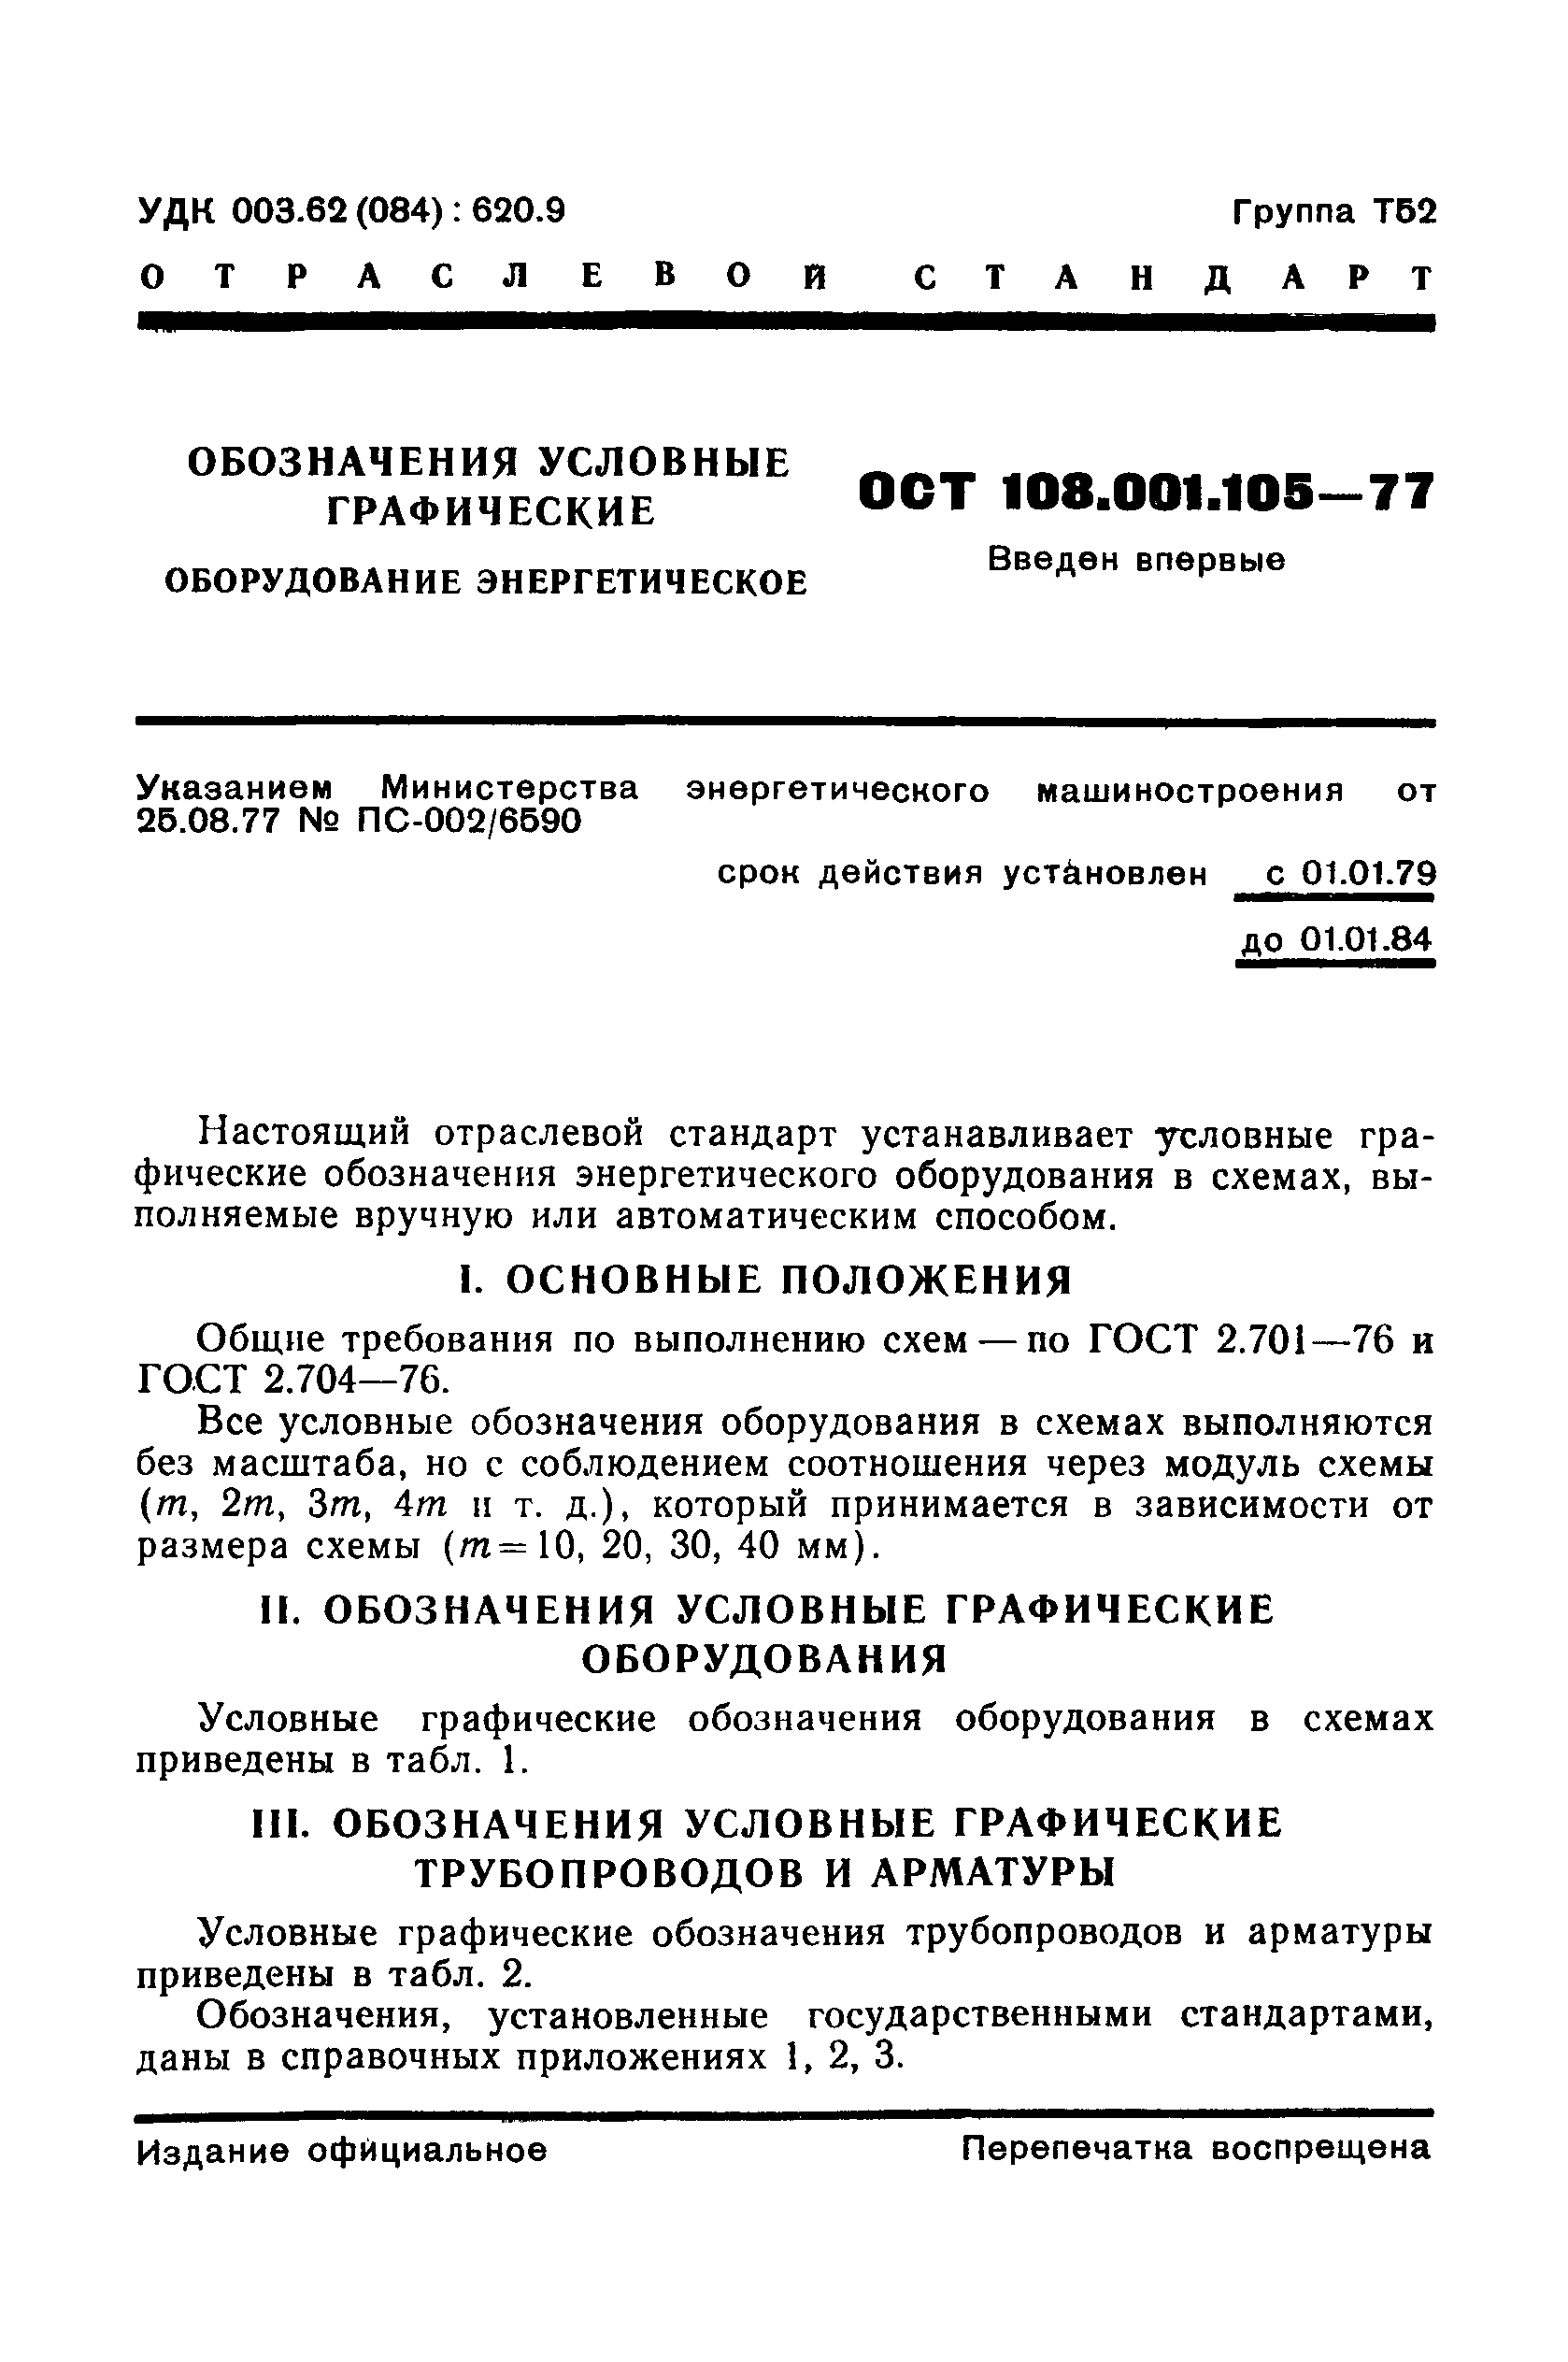 ОСТ 108.001.105-77